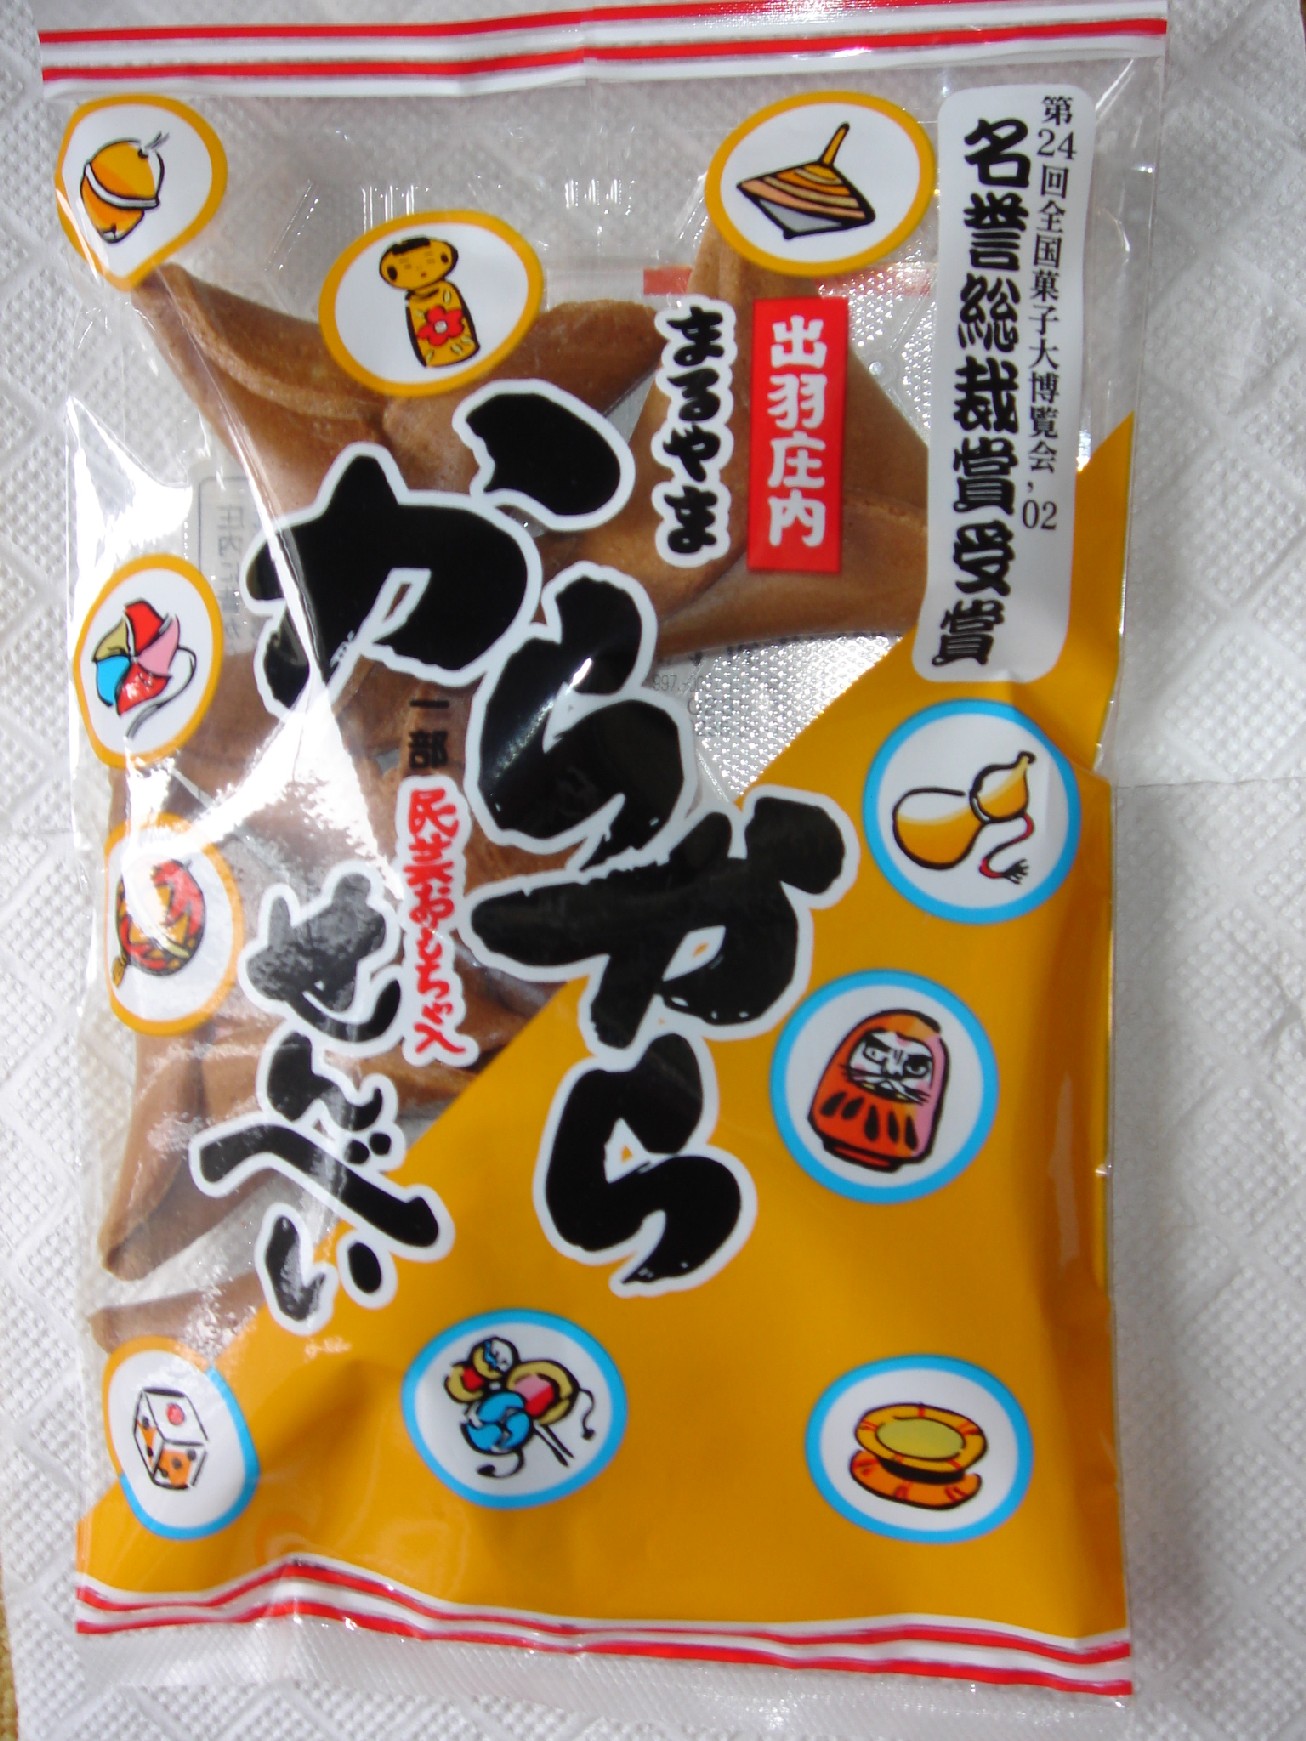 お買い得 江戸時代から伝わる鶴岡の駄菓子の一つです 今でも一つ一つ手作りで 昔と変わらないおいしさです からからせんべい 個包装タイプ 10個セット  特製おもちゃ idvn.com.vn